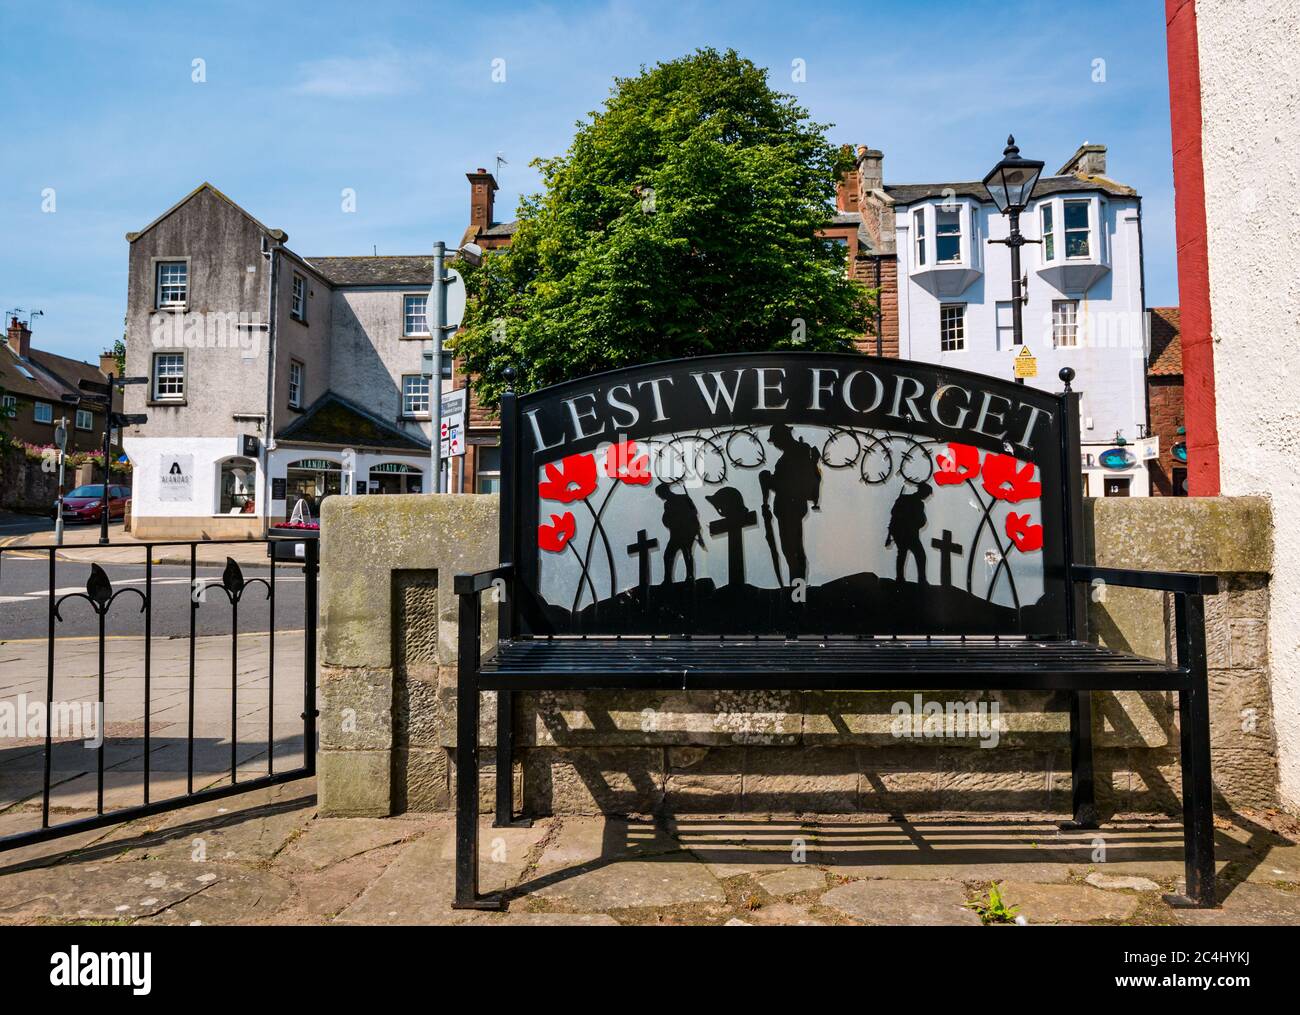 Ne nous oublions pas le banc commémoratif dans le jardin du souvenir de guerre le jour ensoleillé, North Berwick, East Lothian, Écosse, Royaume-Uni Banque D'Images